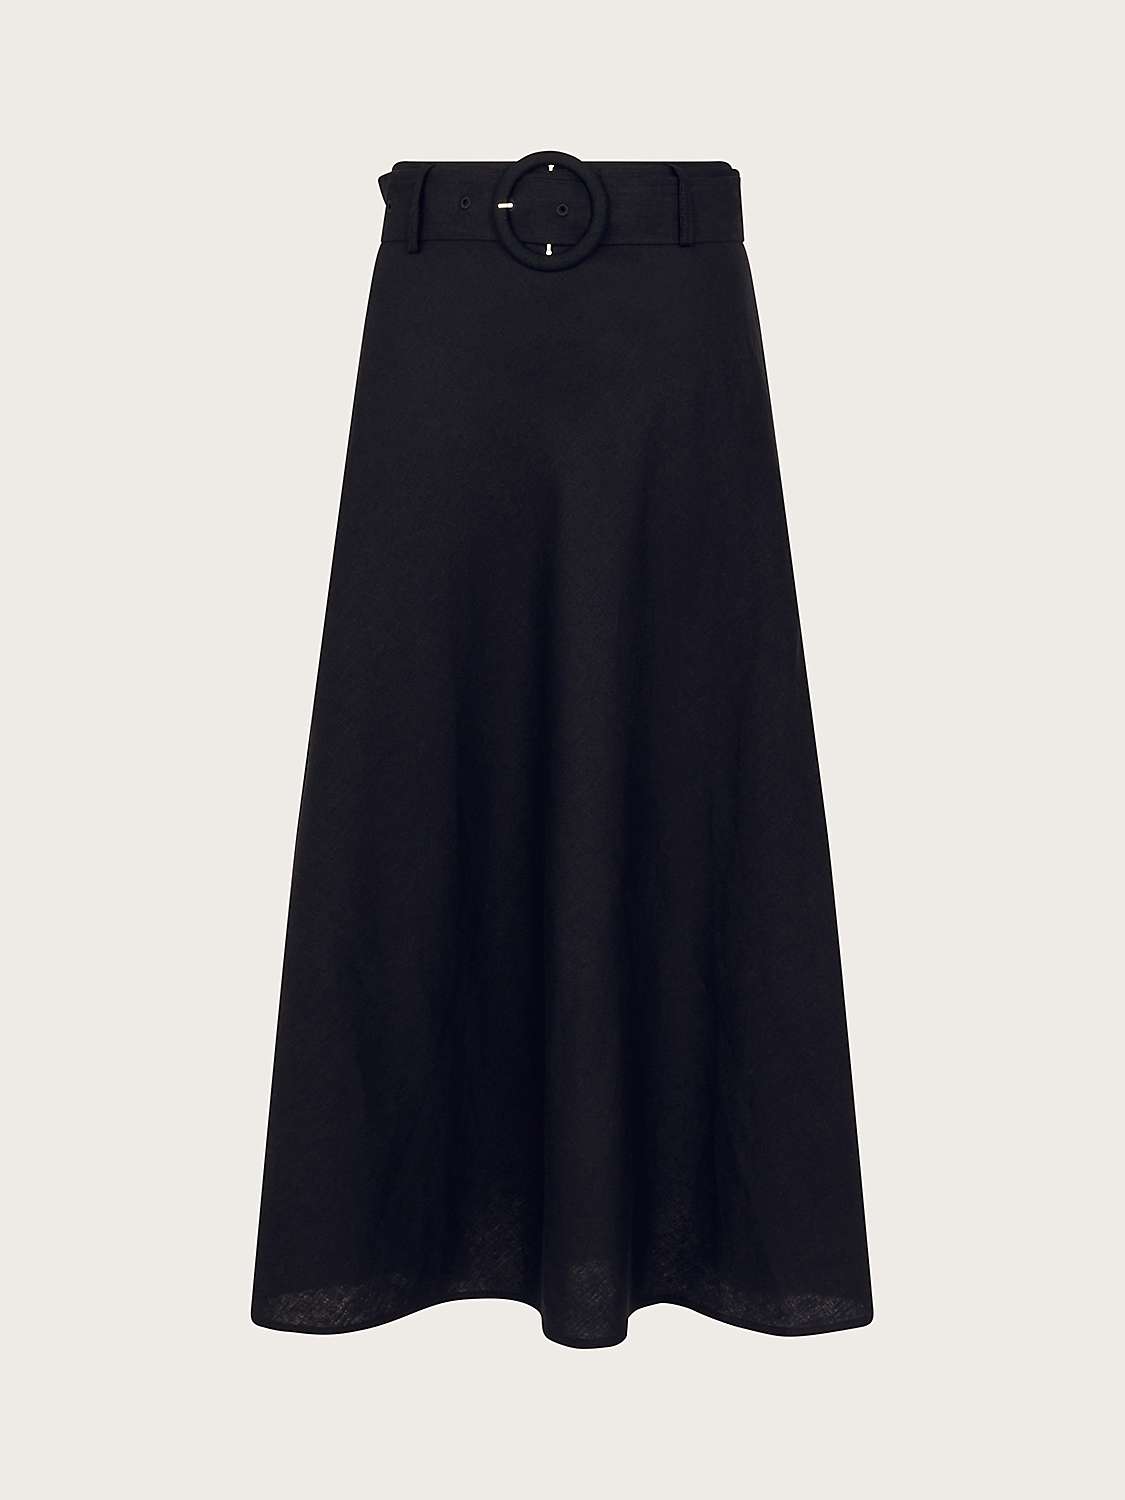 Buy Monsoon Olive Midi Skirt, Black Online at johnlewis.com